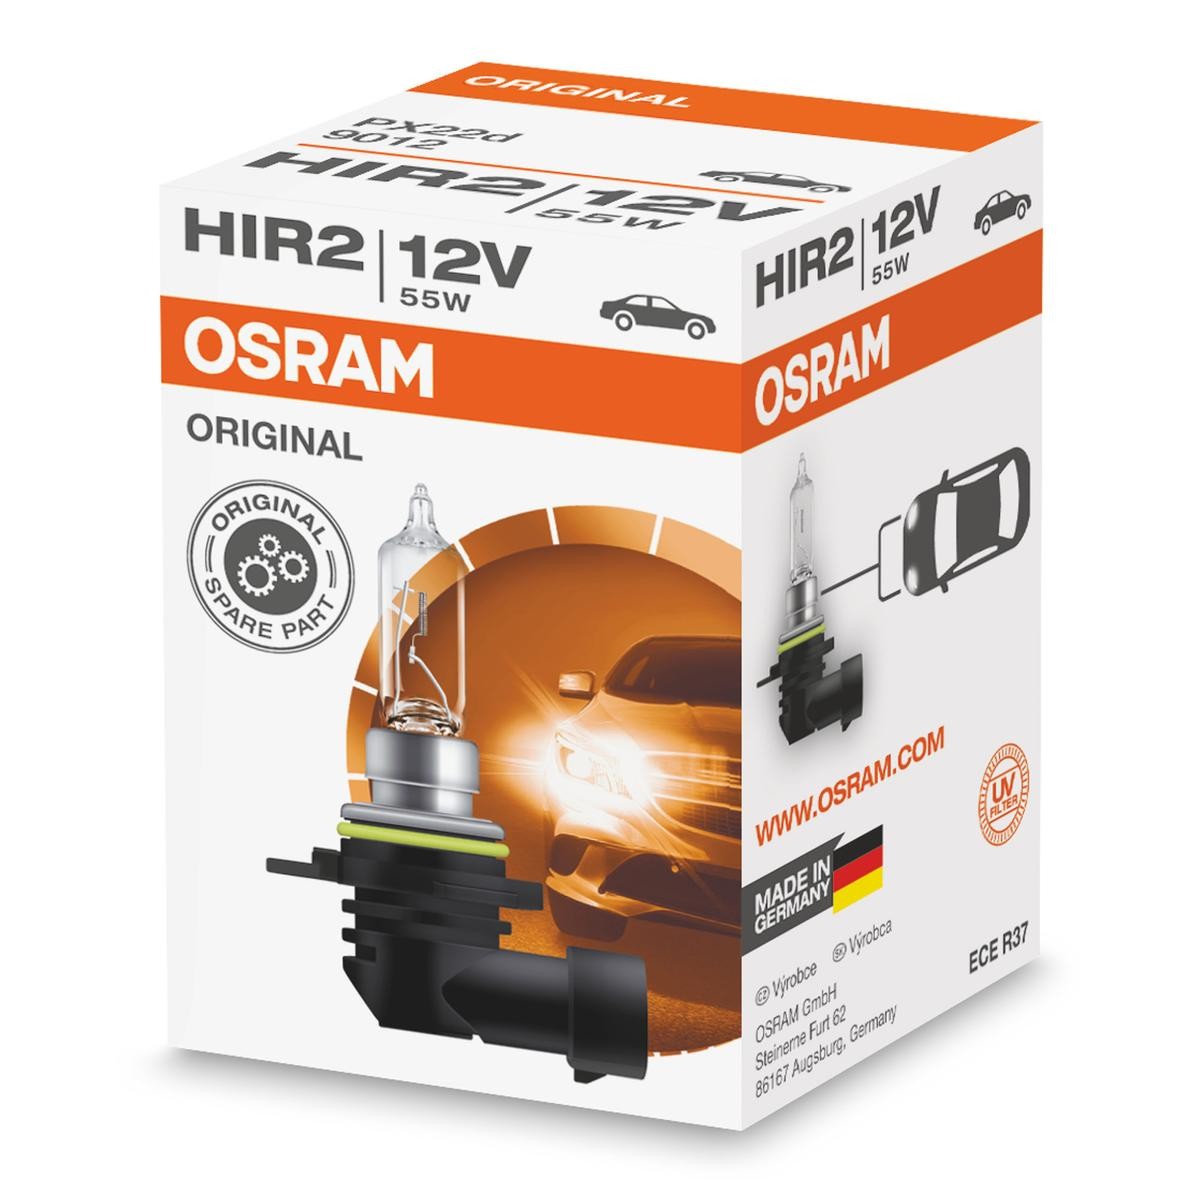 HIR2 OSRAM HIR2 12V 55W PX22d 3200K Halogen ORIGINAL Glödlampa, fjärrstrålkastare 9012 köp lågt pris